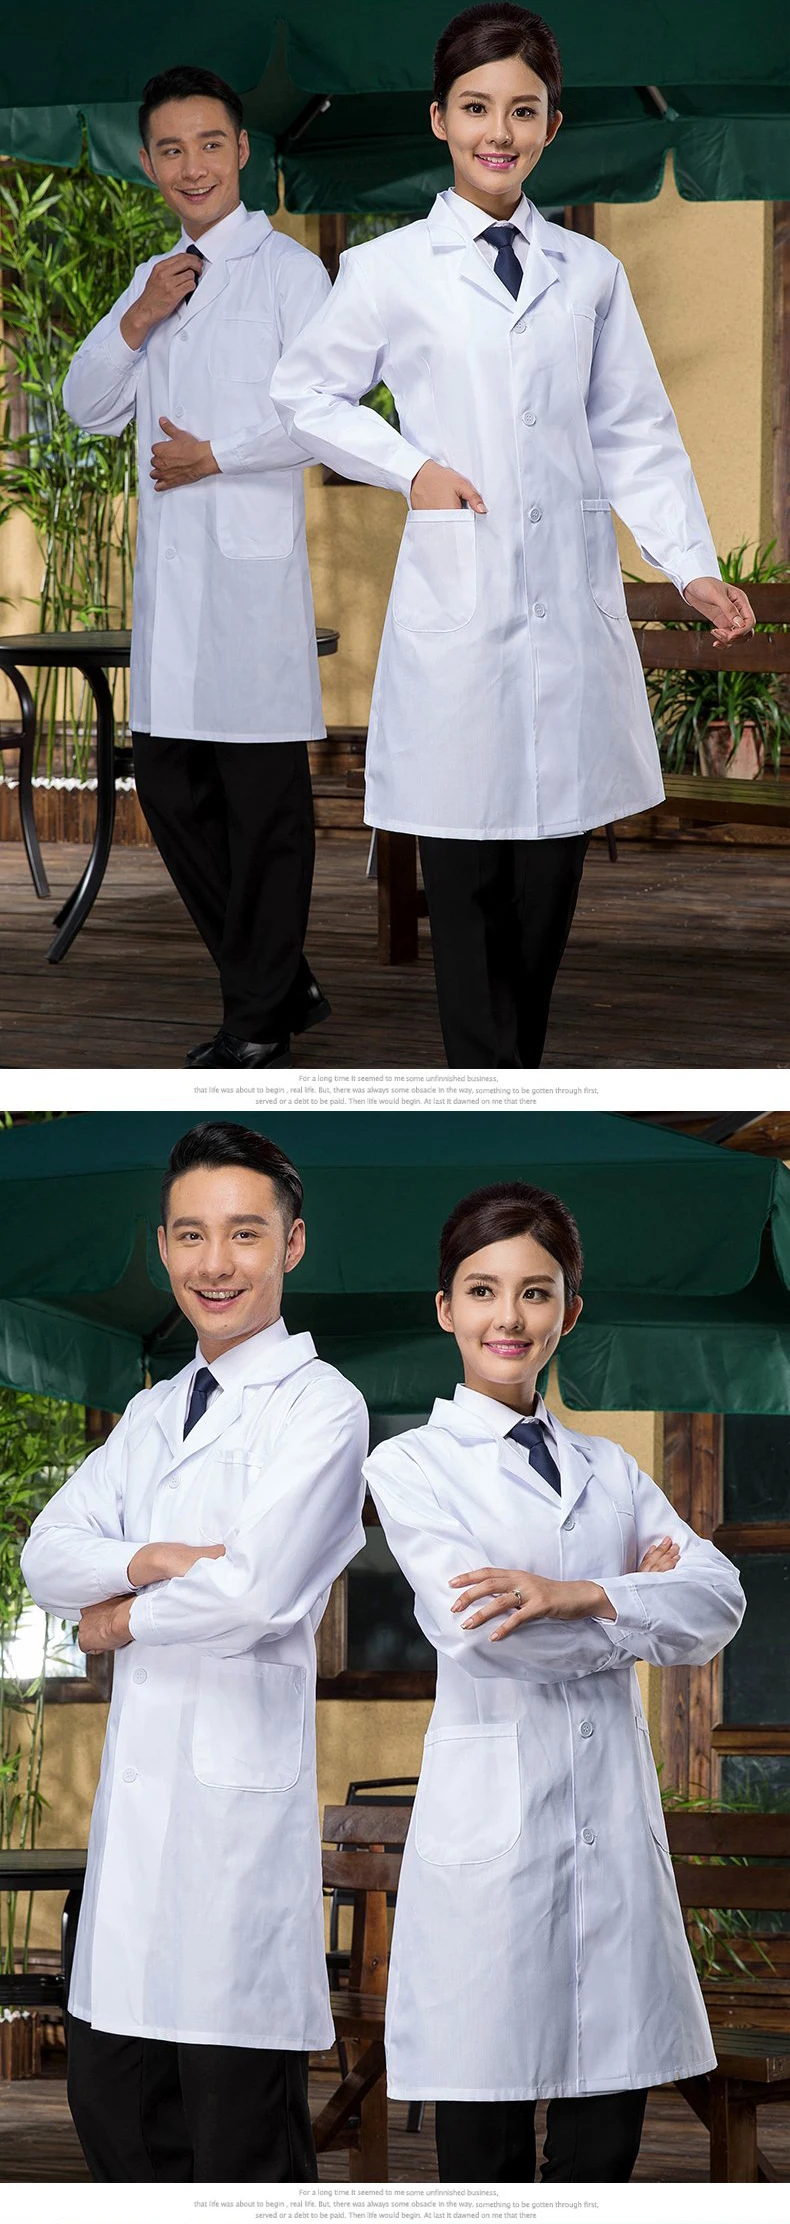 Для мужчин белый/с длинными рукавами леди медицинская куртка медсестра сервис униформы медицинский Прачечная белом халате больница доктора одежда